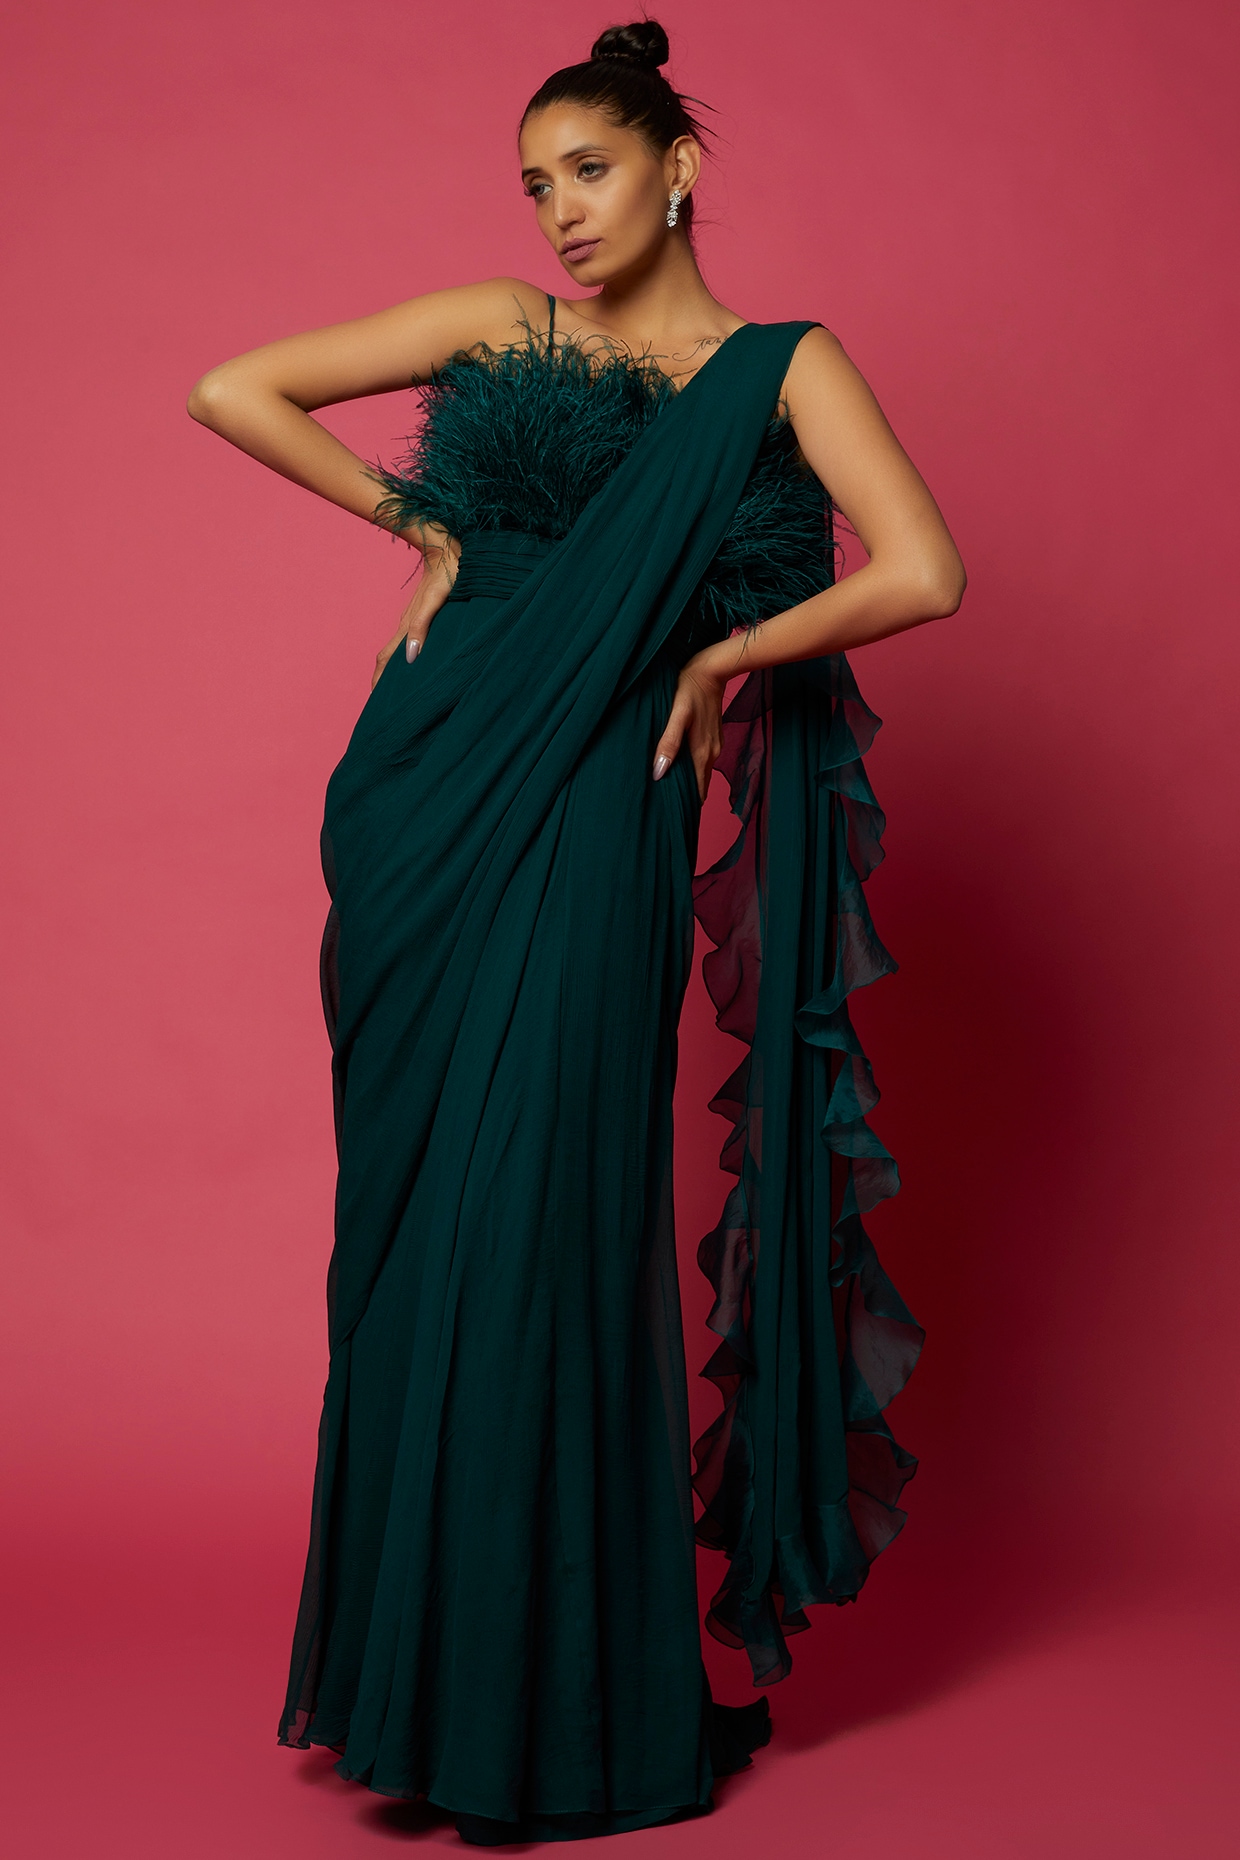 DIY| Convert Old Saree Into Long Gown Drees In 15 Minutes| Reuse Saree |  Designer saree blouse patterns, Chiffon saree to gown convert, Saree dress